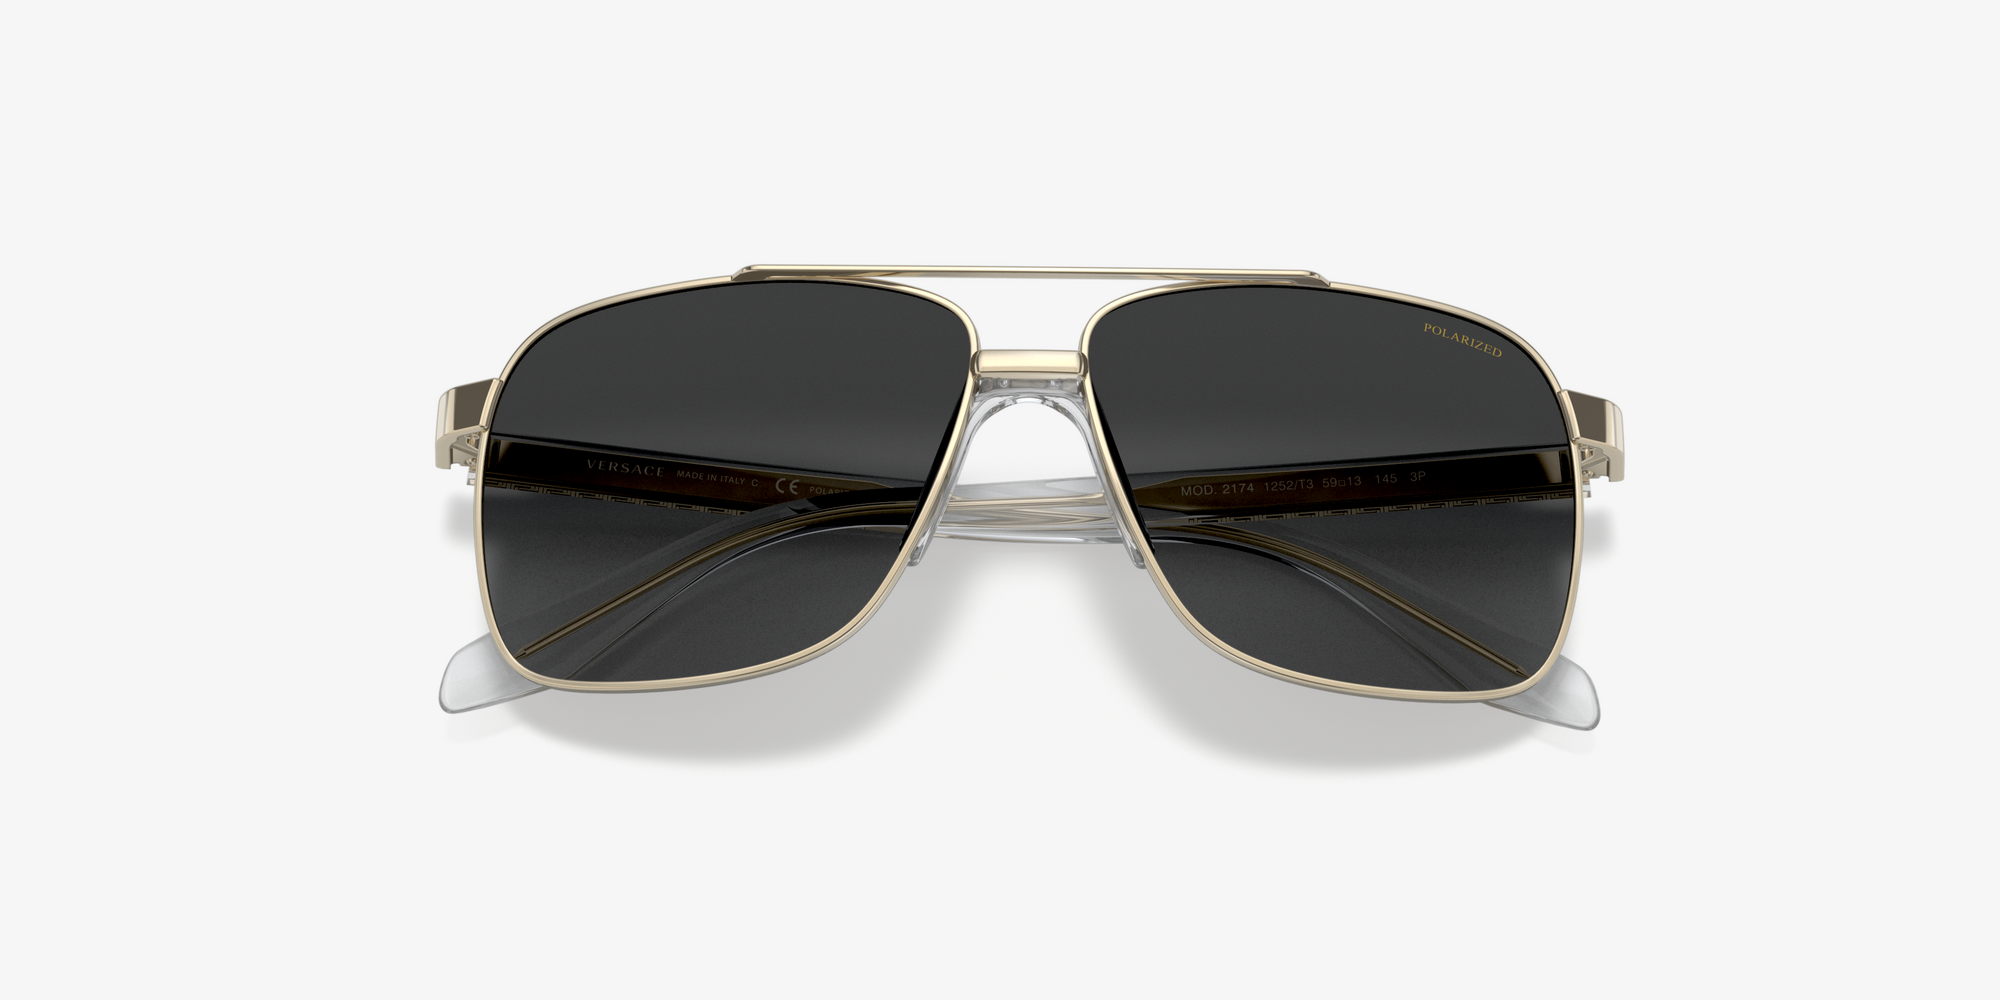 Authentic Versace 0VE 2174 1252T3 PALE GOLD Polarized Sunglasses